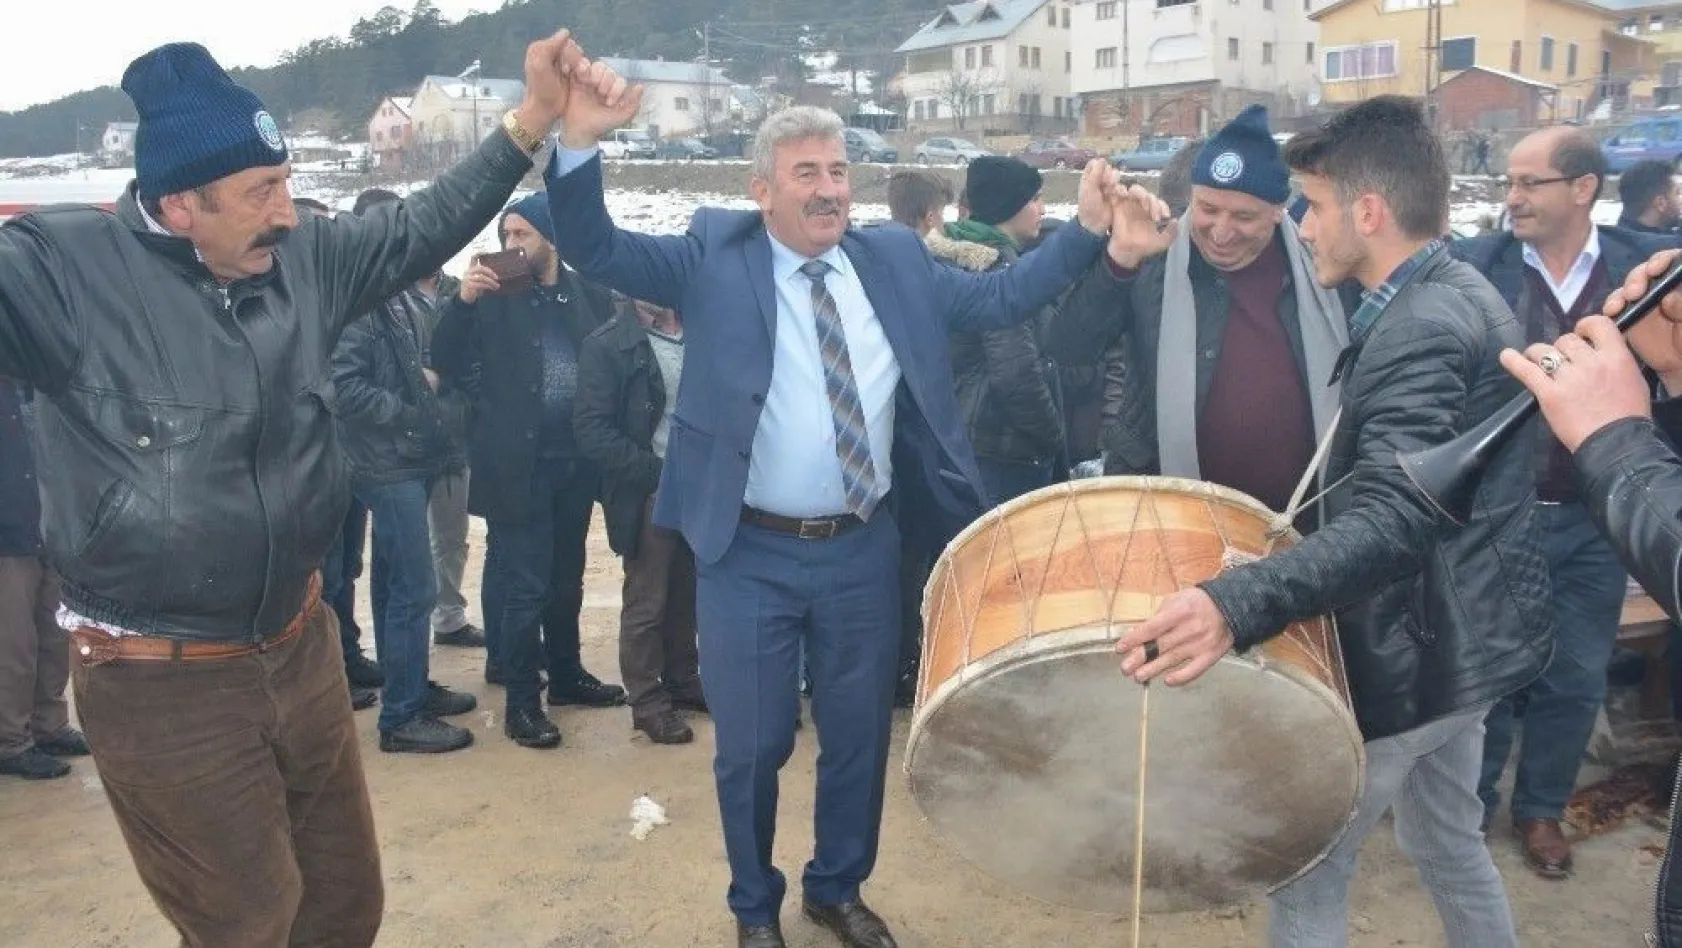 Koyulhisar'da kış festivali düzenlendi
